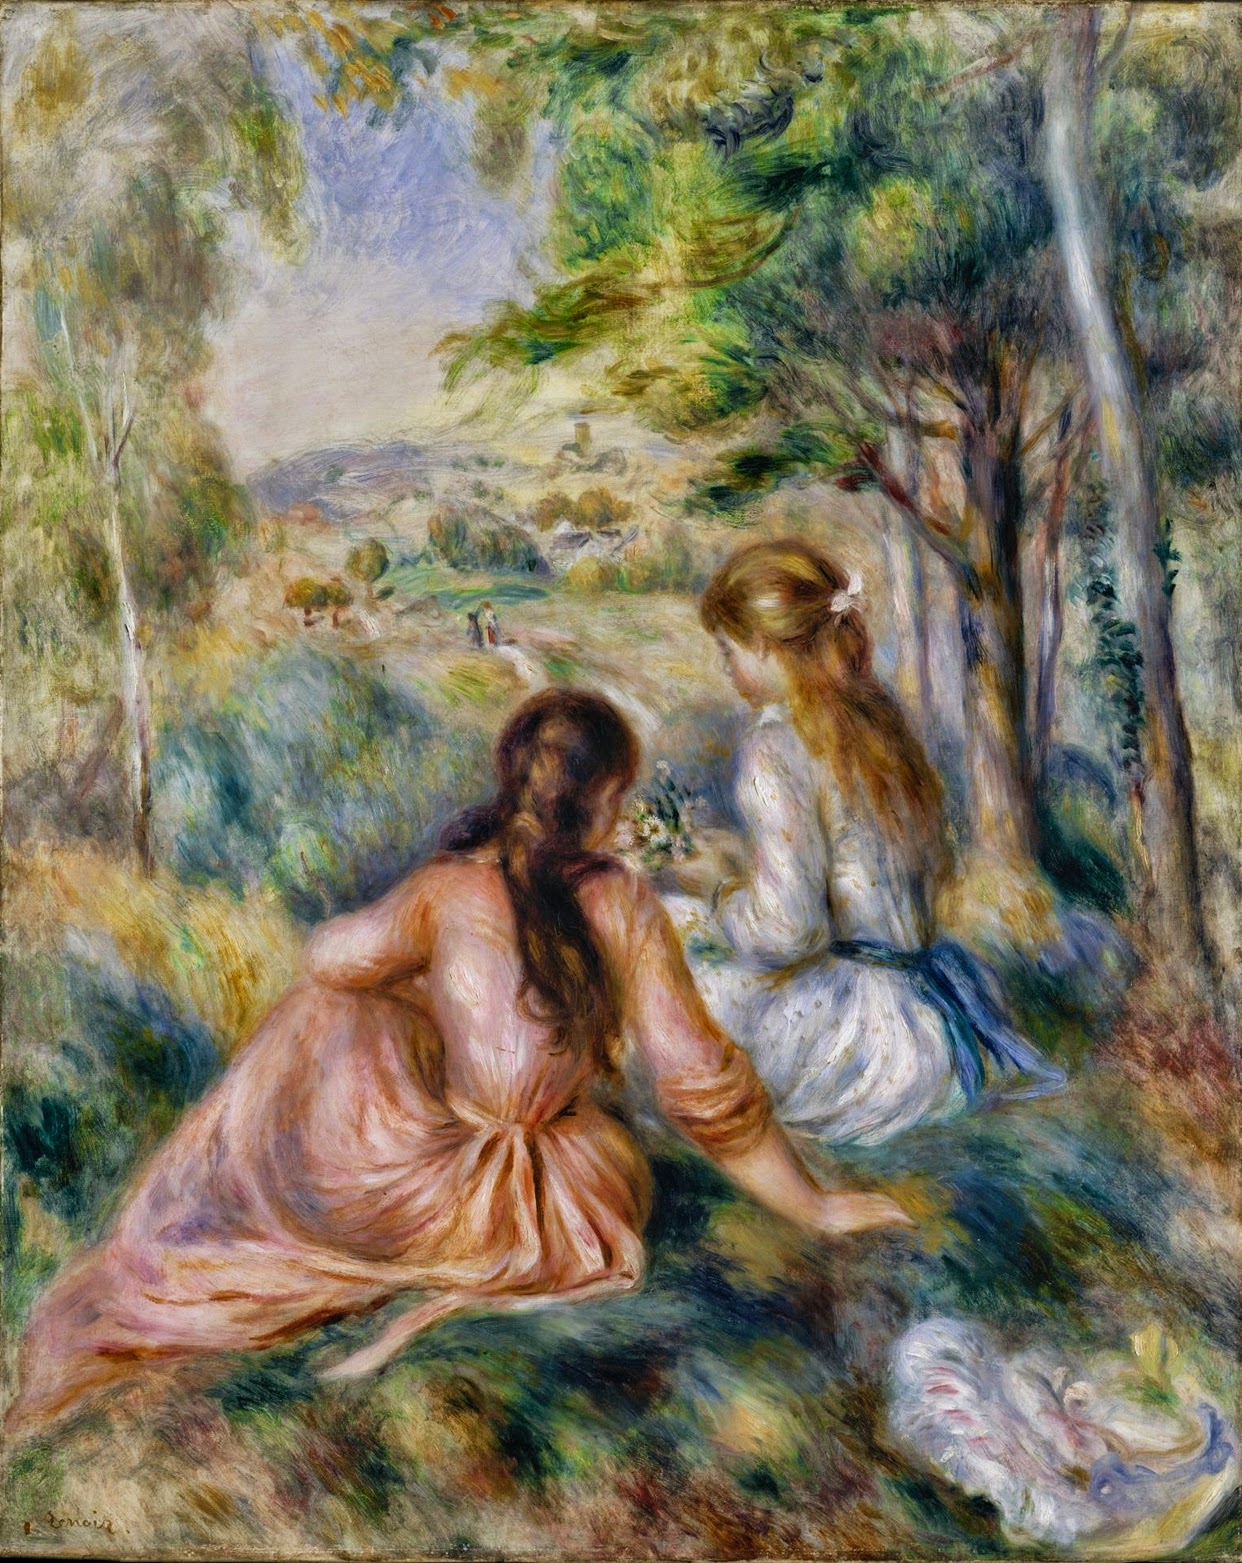 Pierre+Auguste+Renoir-1841-1-19 (117).jpg